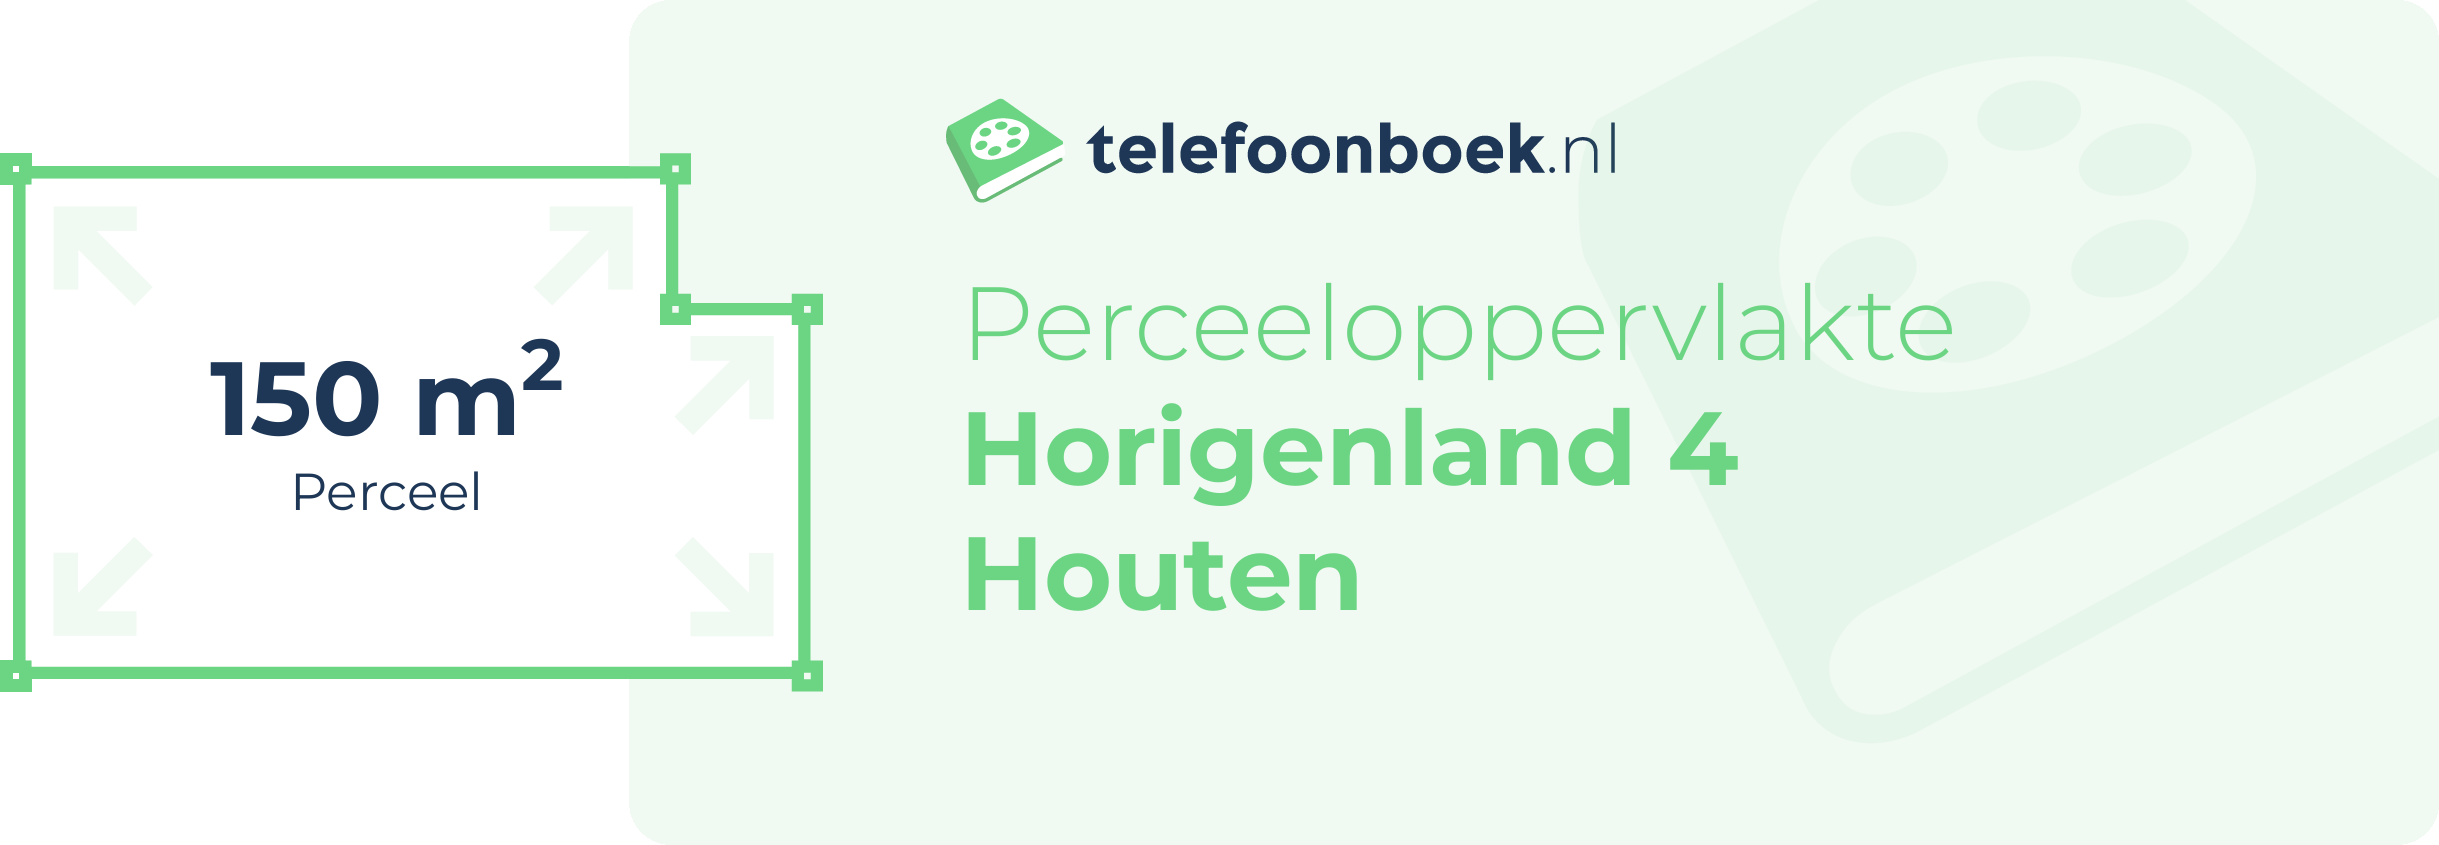 Perceeloppervlakte Horigenland 4 Houten